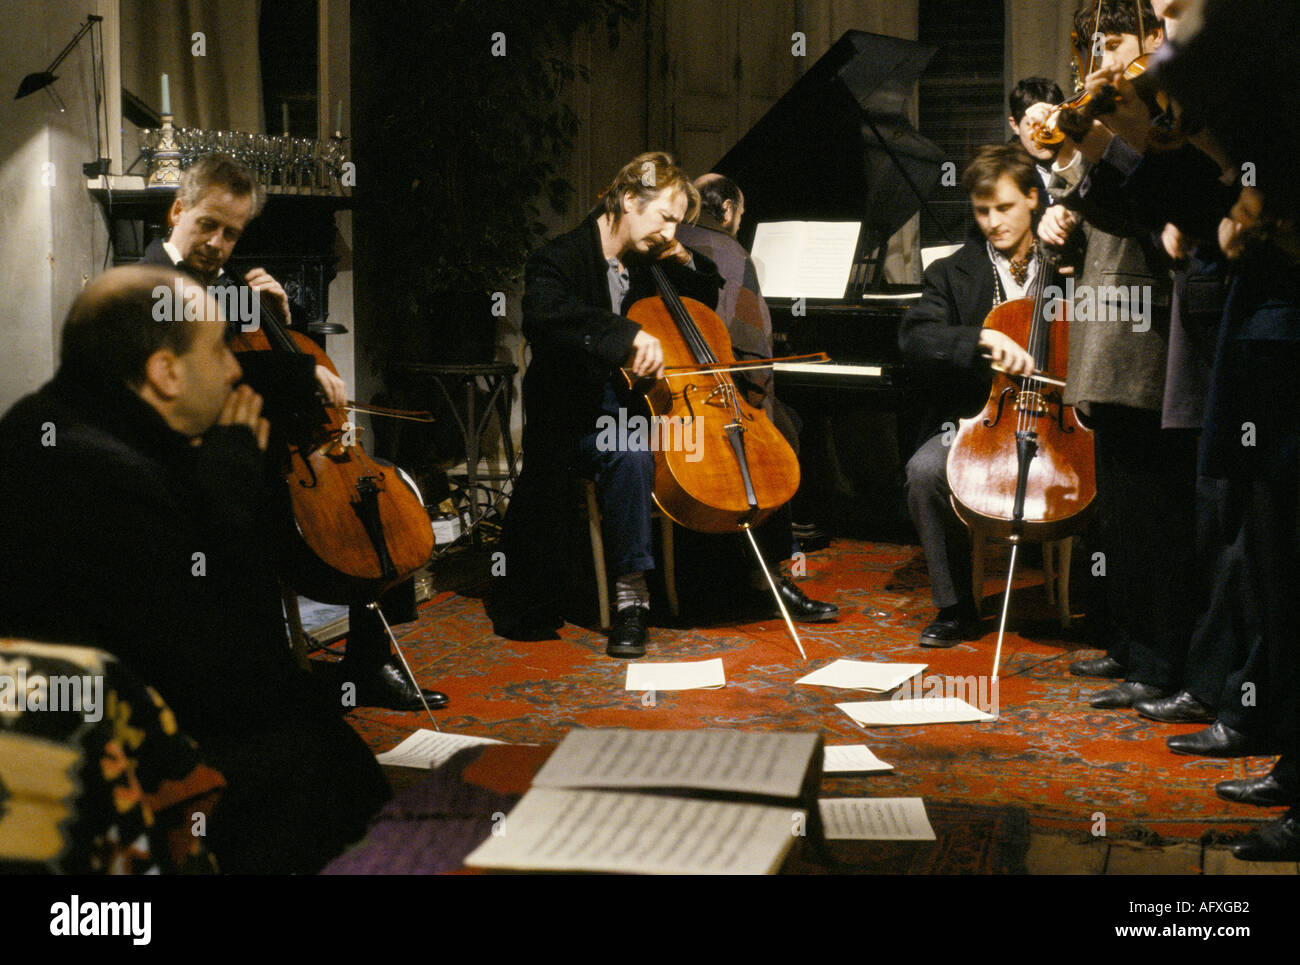 Alan Rickman attore britannico che suona il violoncello sul set del film Truly Madly profondamente, Londra, Inghilterra 21st marzo 1990. 1990s OMERO SYKES Foto Stock